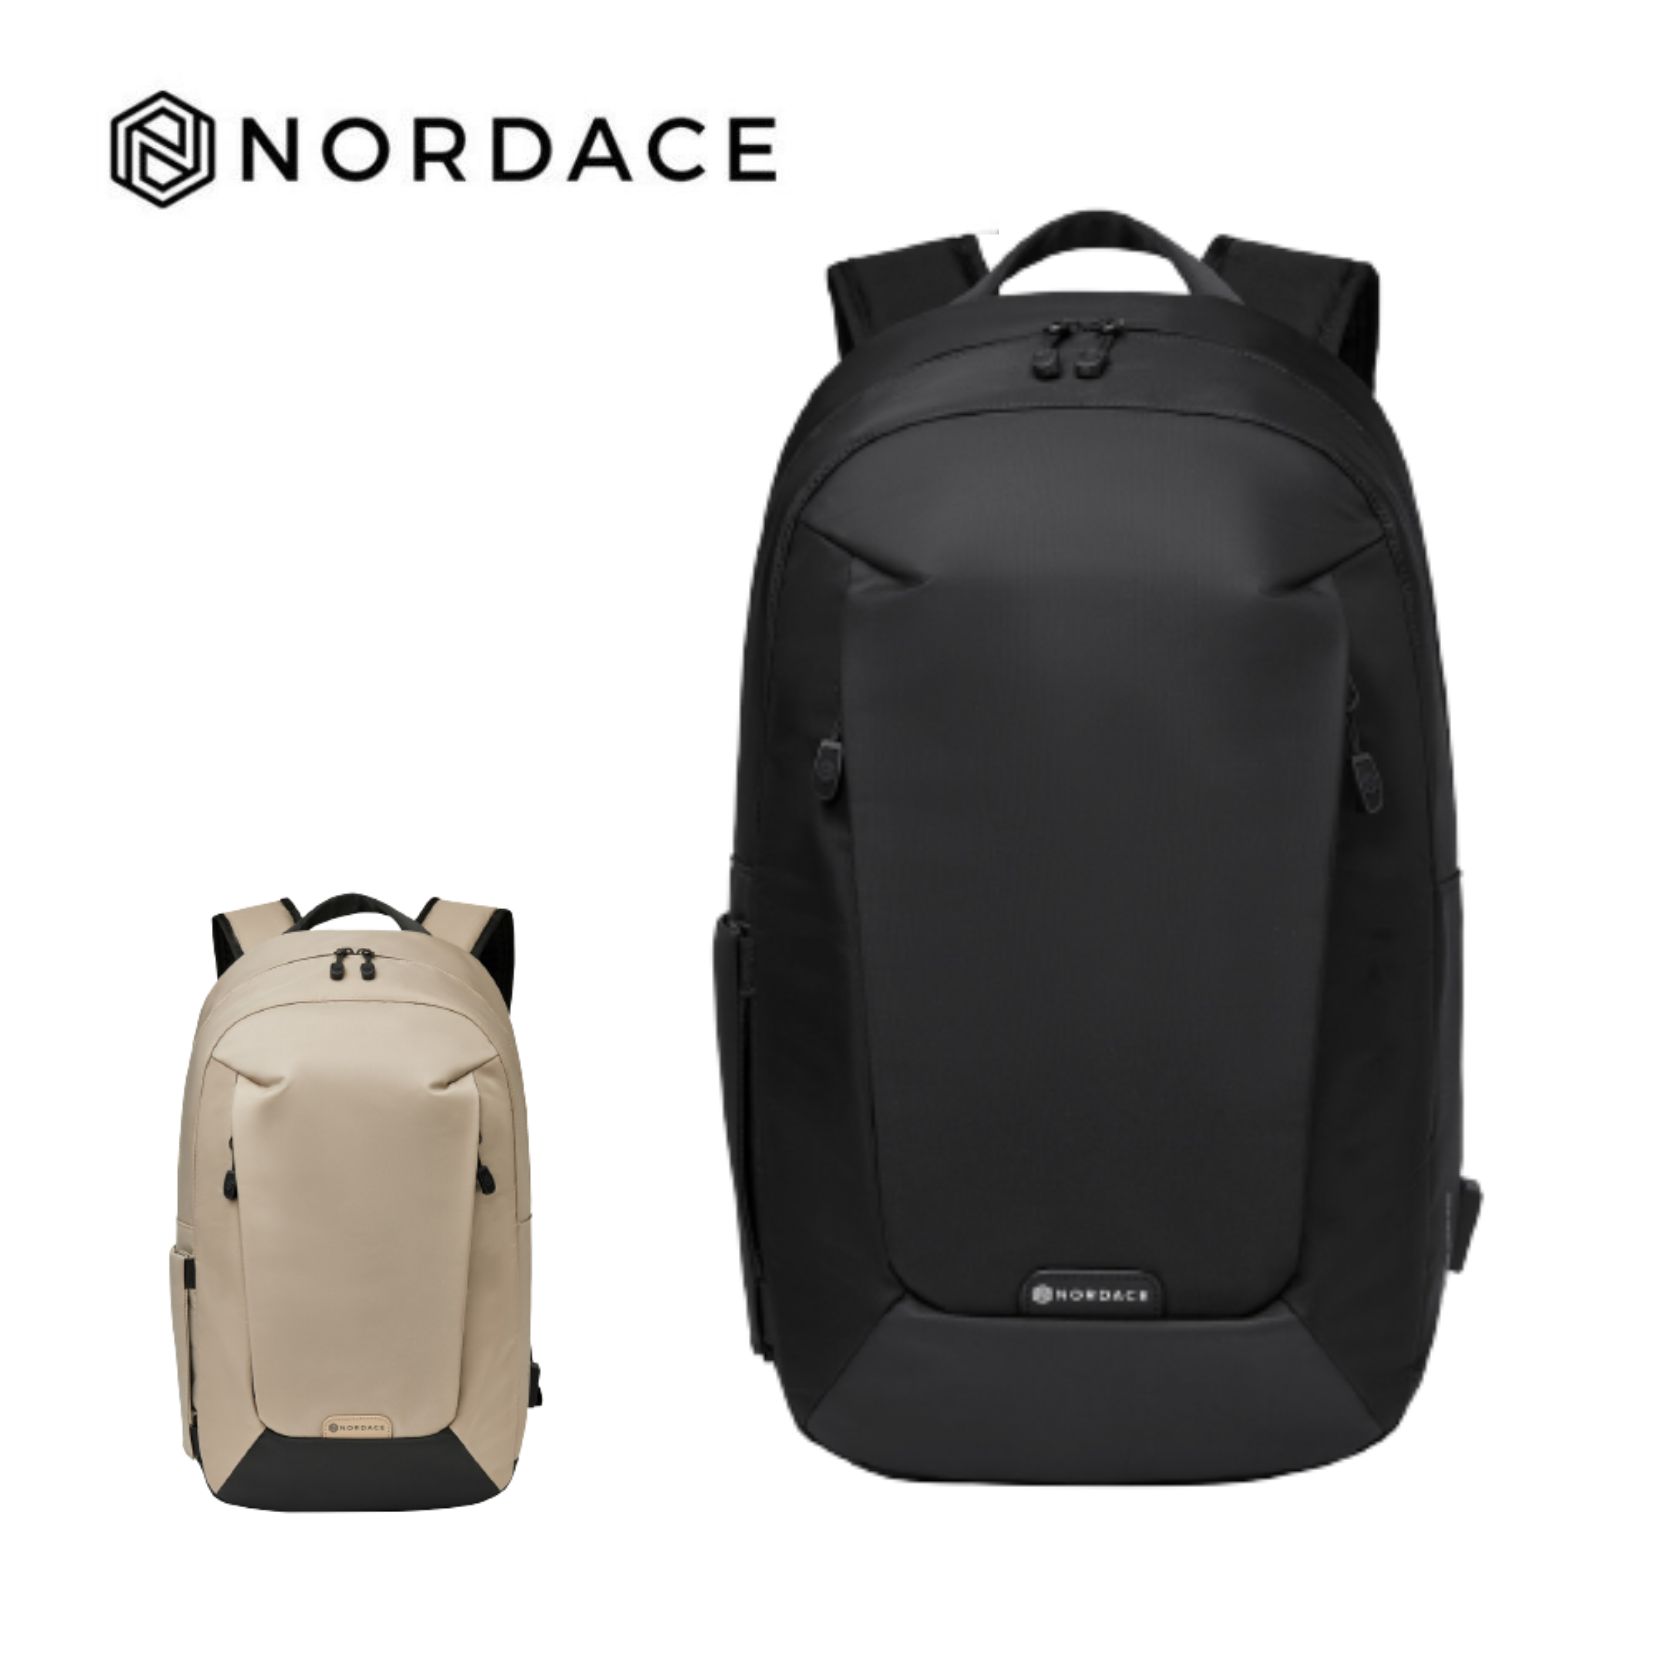 Nordace Aerial Infinity 背包 雙肩包 肩背包 大容量 舒適 兩色可選-黑色